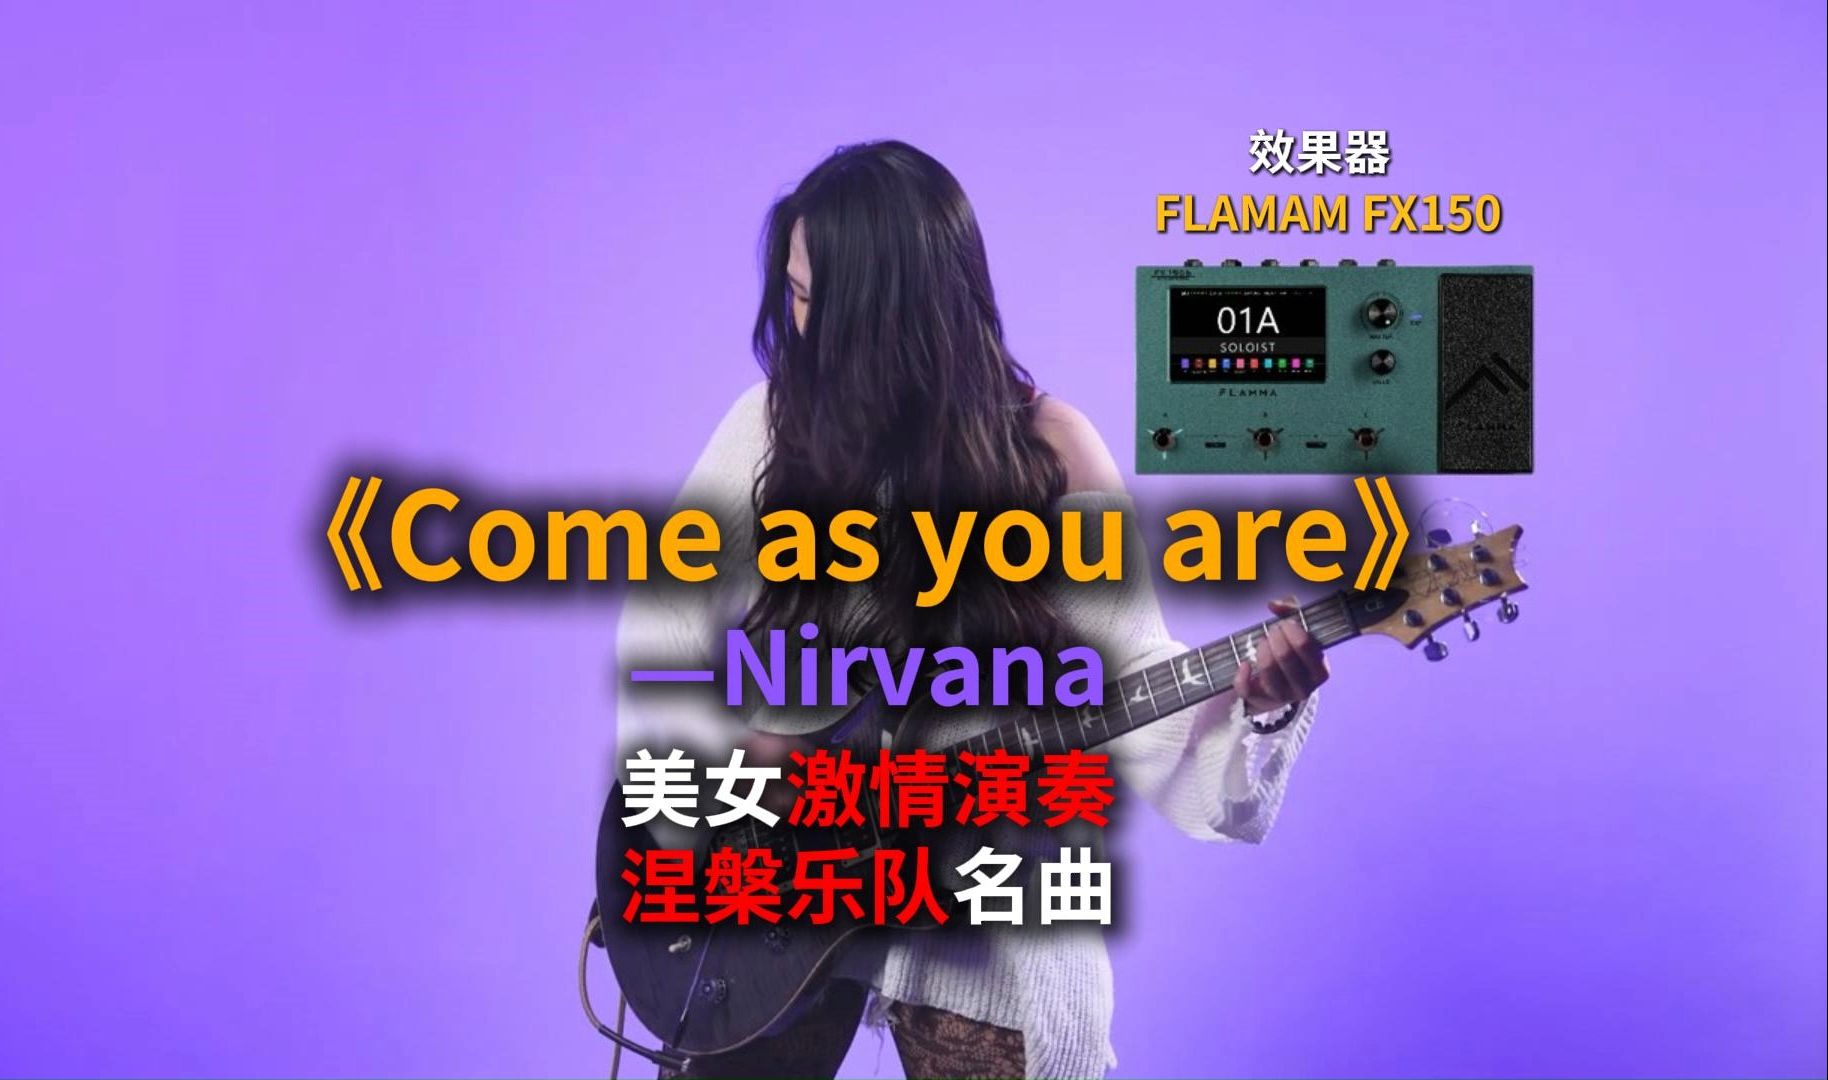 美女激情演奏Nirvana涅槃乐队经典名曲《Come as you are》，大家觉得音色如何？